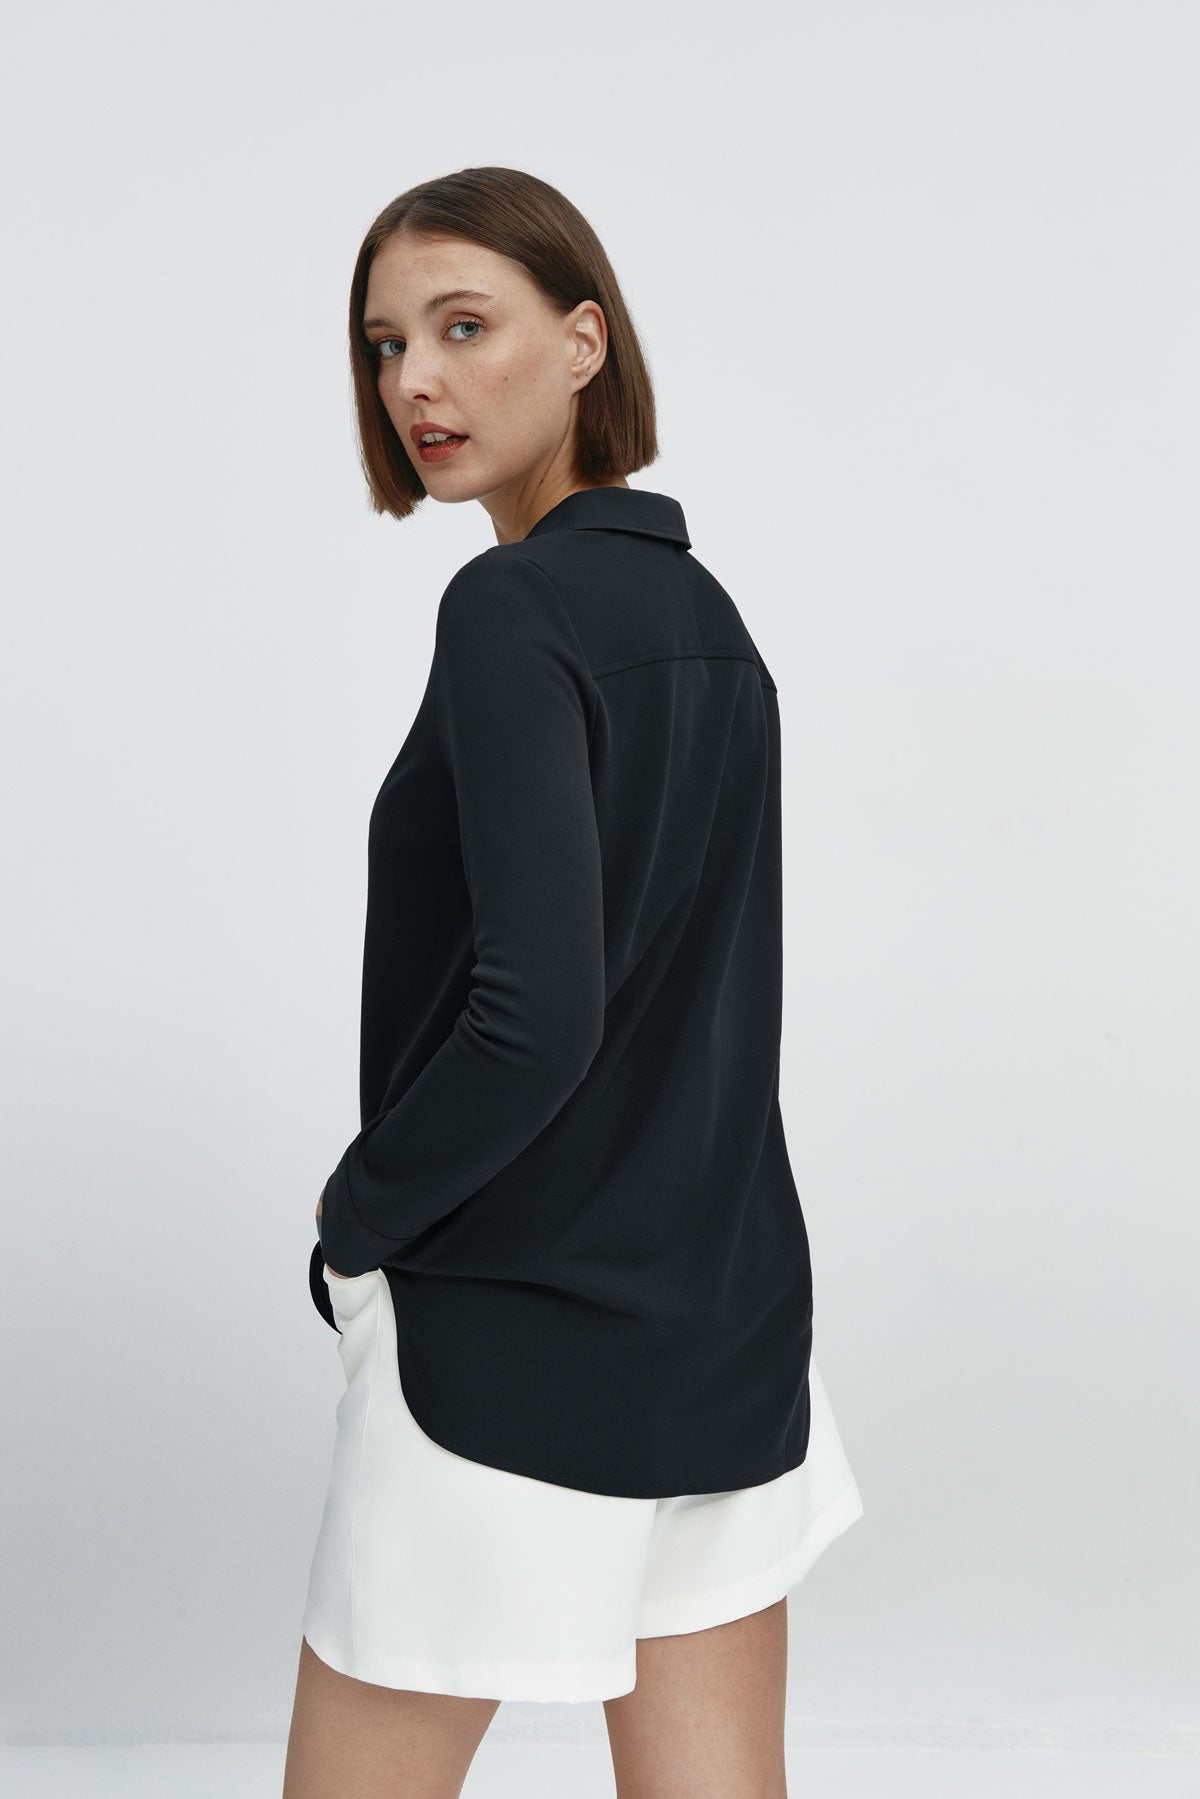 Camisa bowling de mujer negra de Sepiia, estilo y versatilidad en una prenda cómoda y resistente. Foto espalda